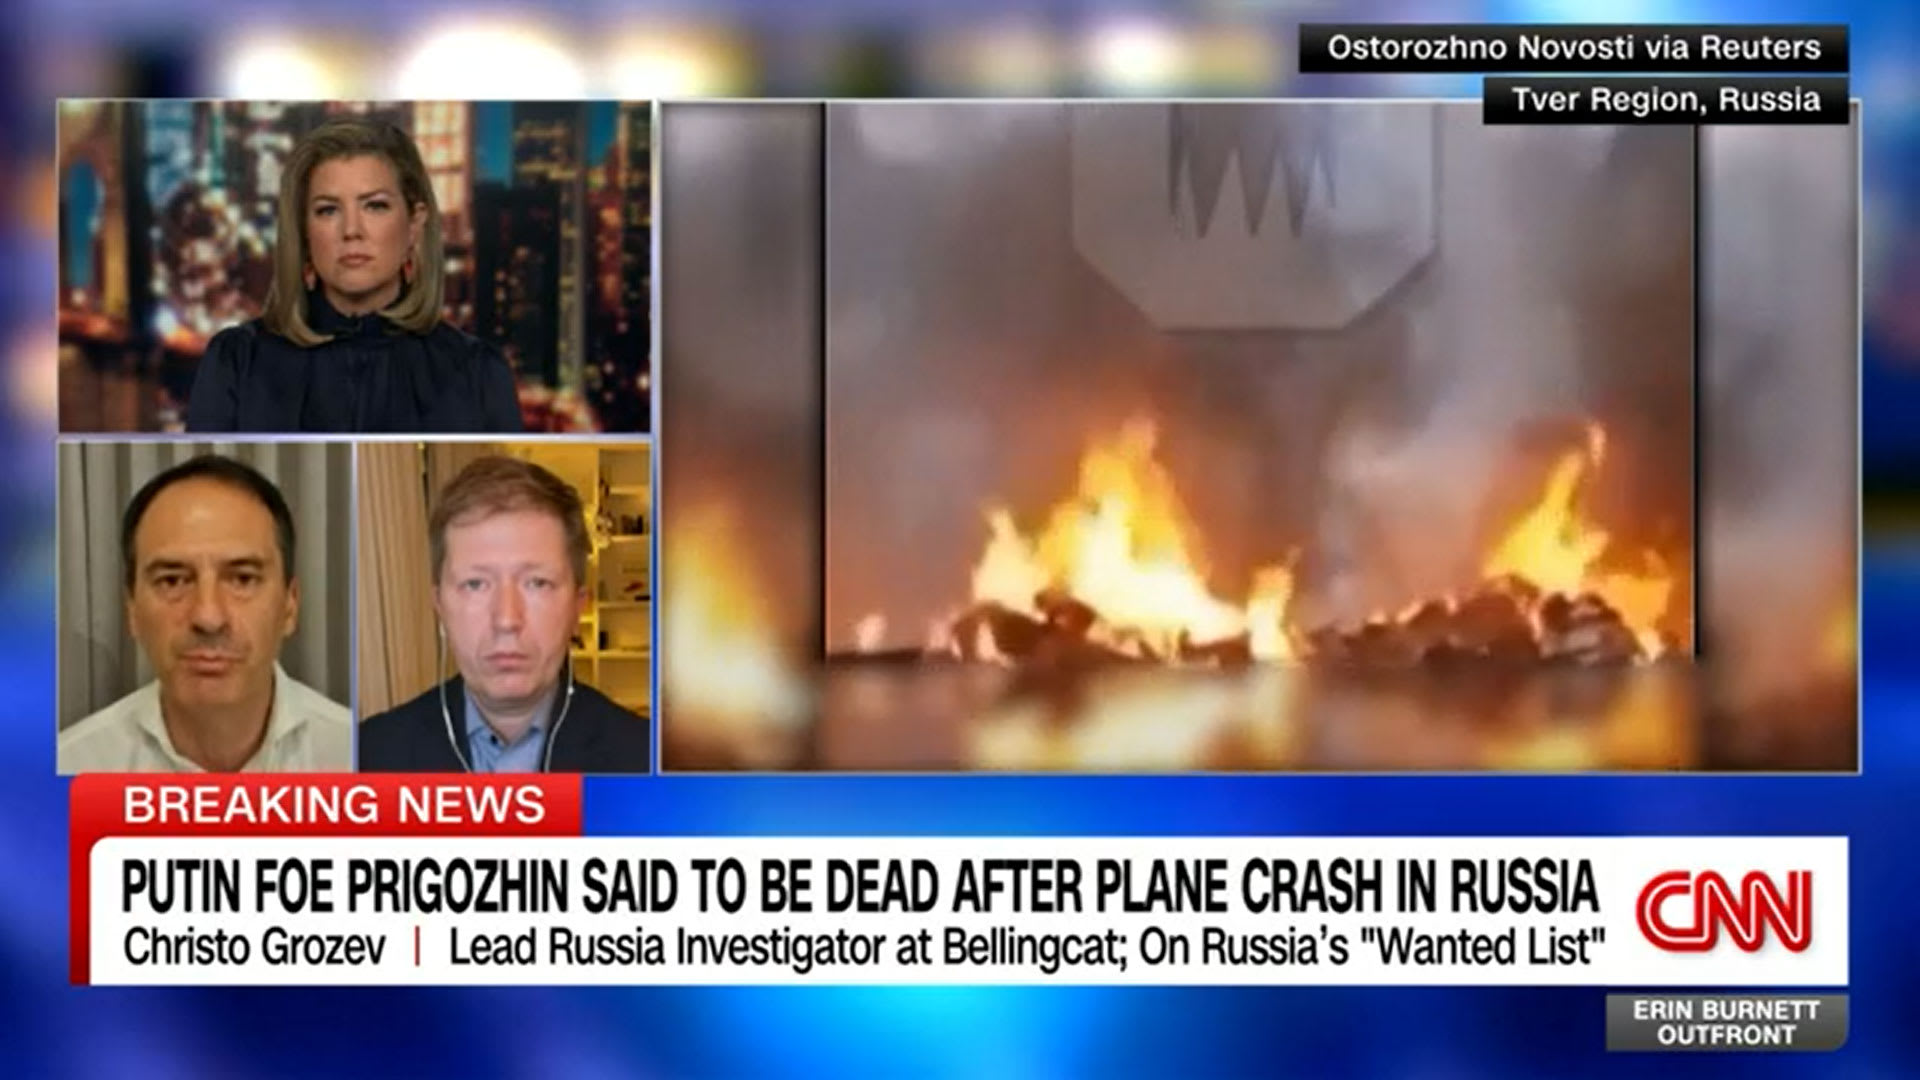 فيديو مزعوم يُظهر سقوط طائرة تحمل اسم بريغوجين في قائمة ركابها